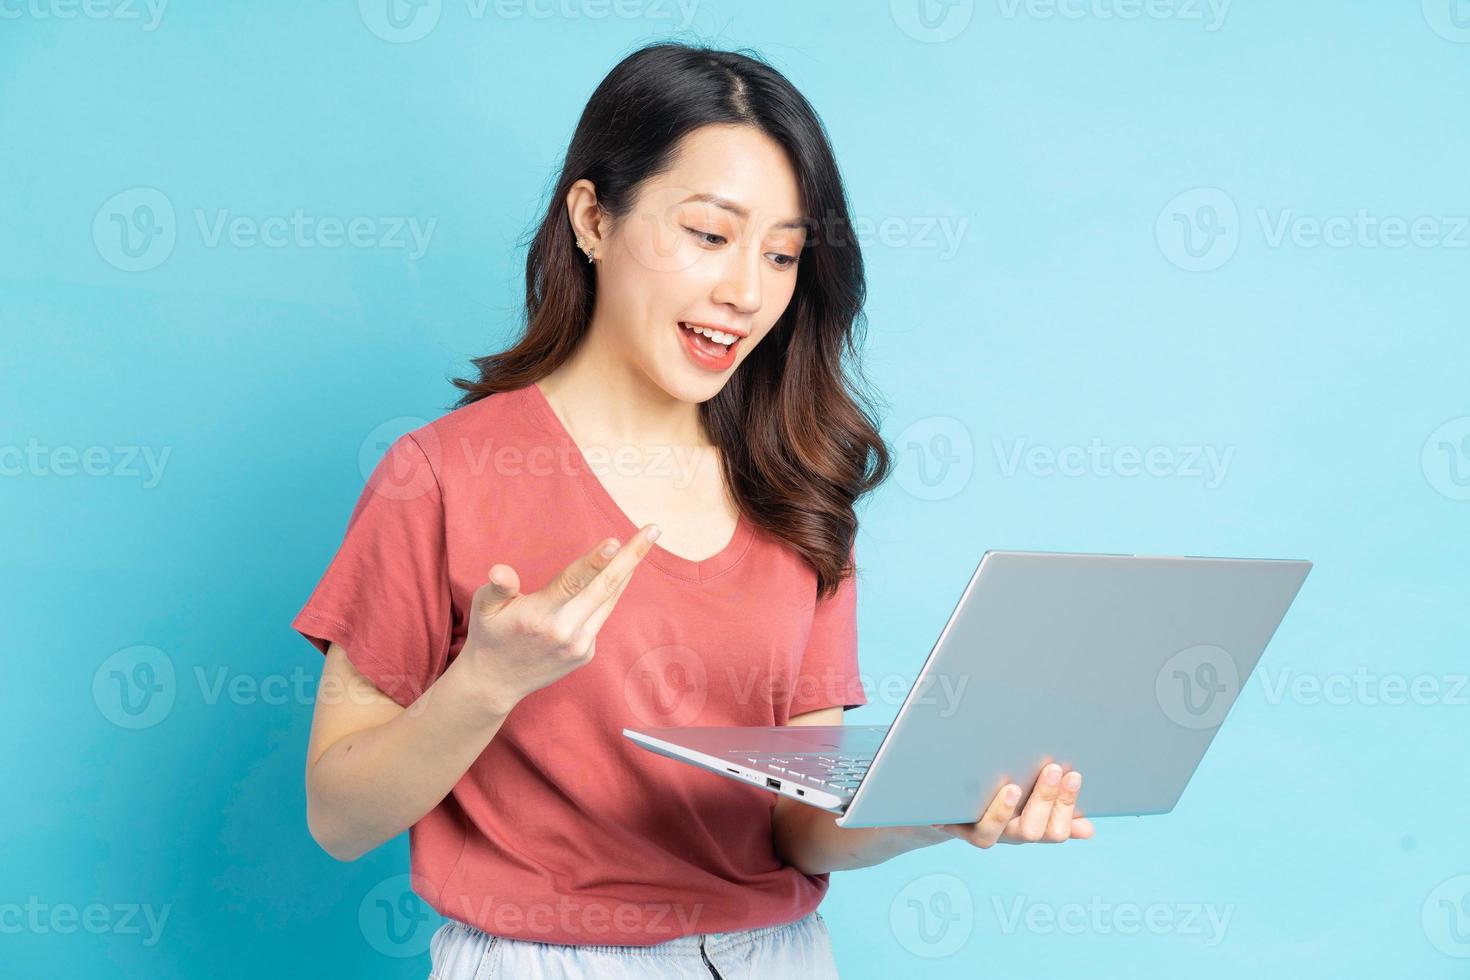 mooie aziatische vrouw die laptop gebruikt om met vrienden te videobellen foto